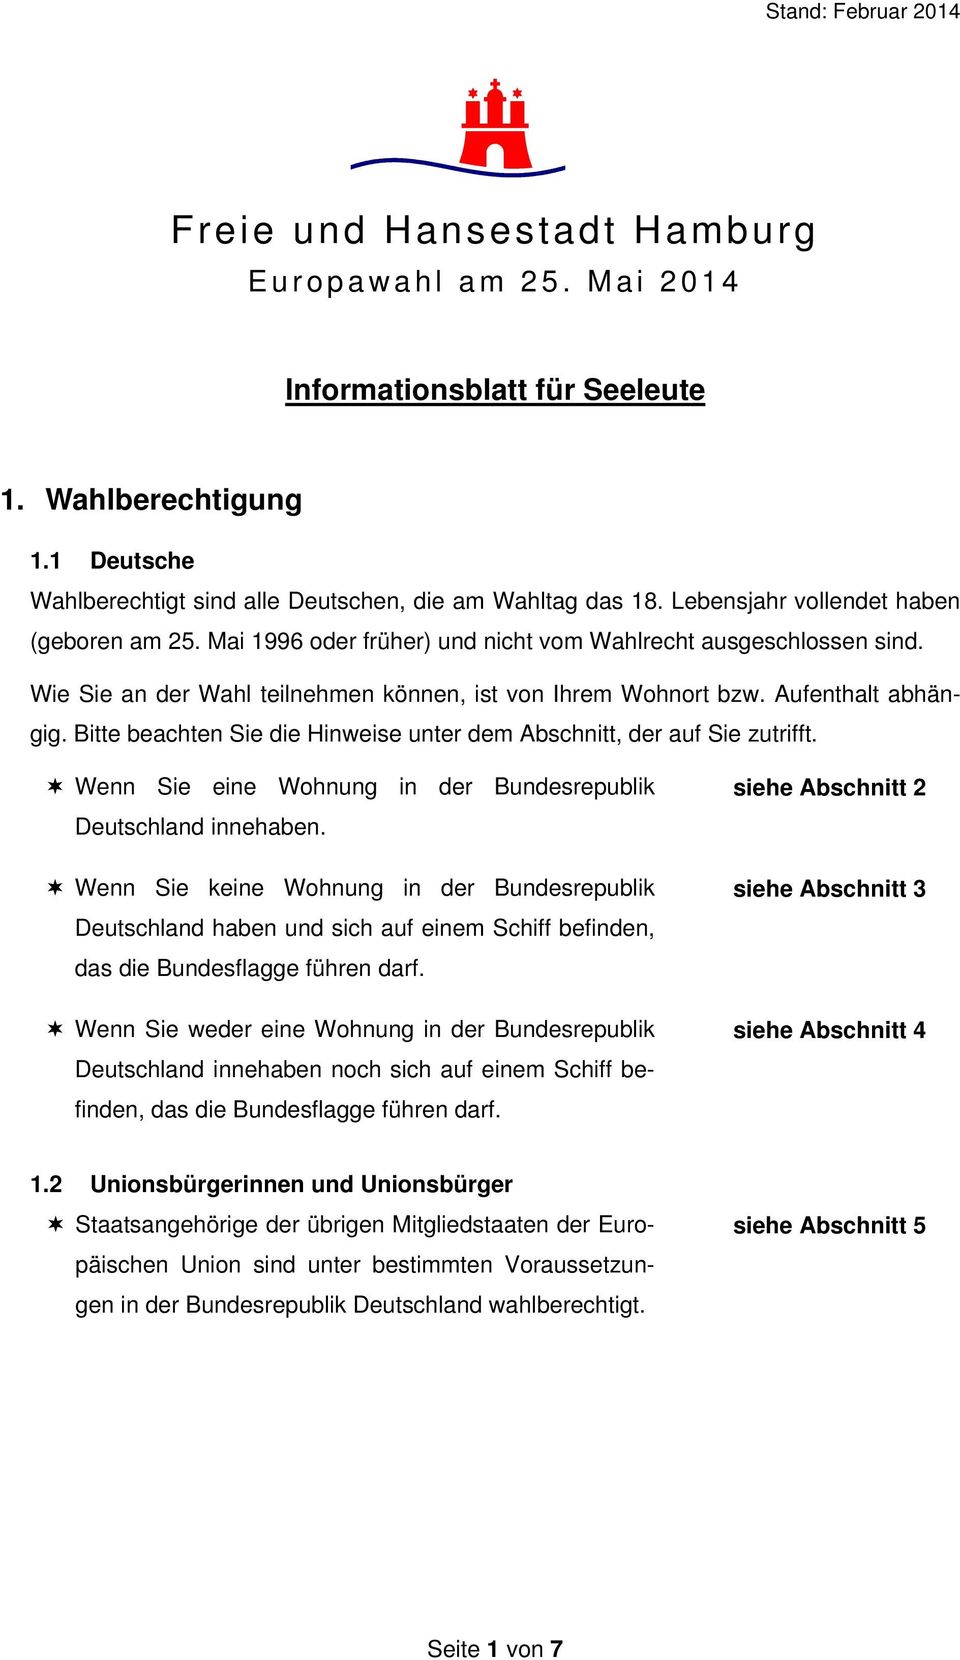 Bitte beachten Sie die Hinweise unter dem Abschnitt, der auf Sie zutrifft. Wenn Sie eine Wohnung in der Bundesrepublik Deutschland innehaben.